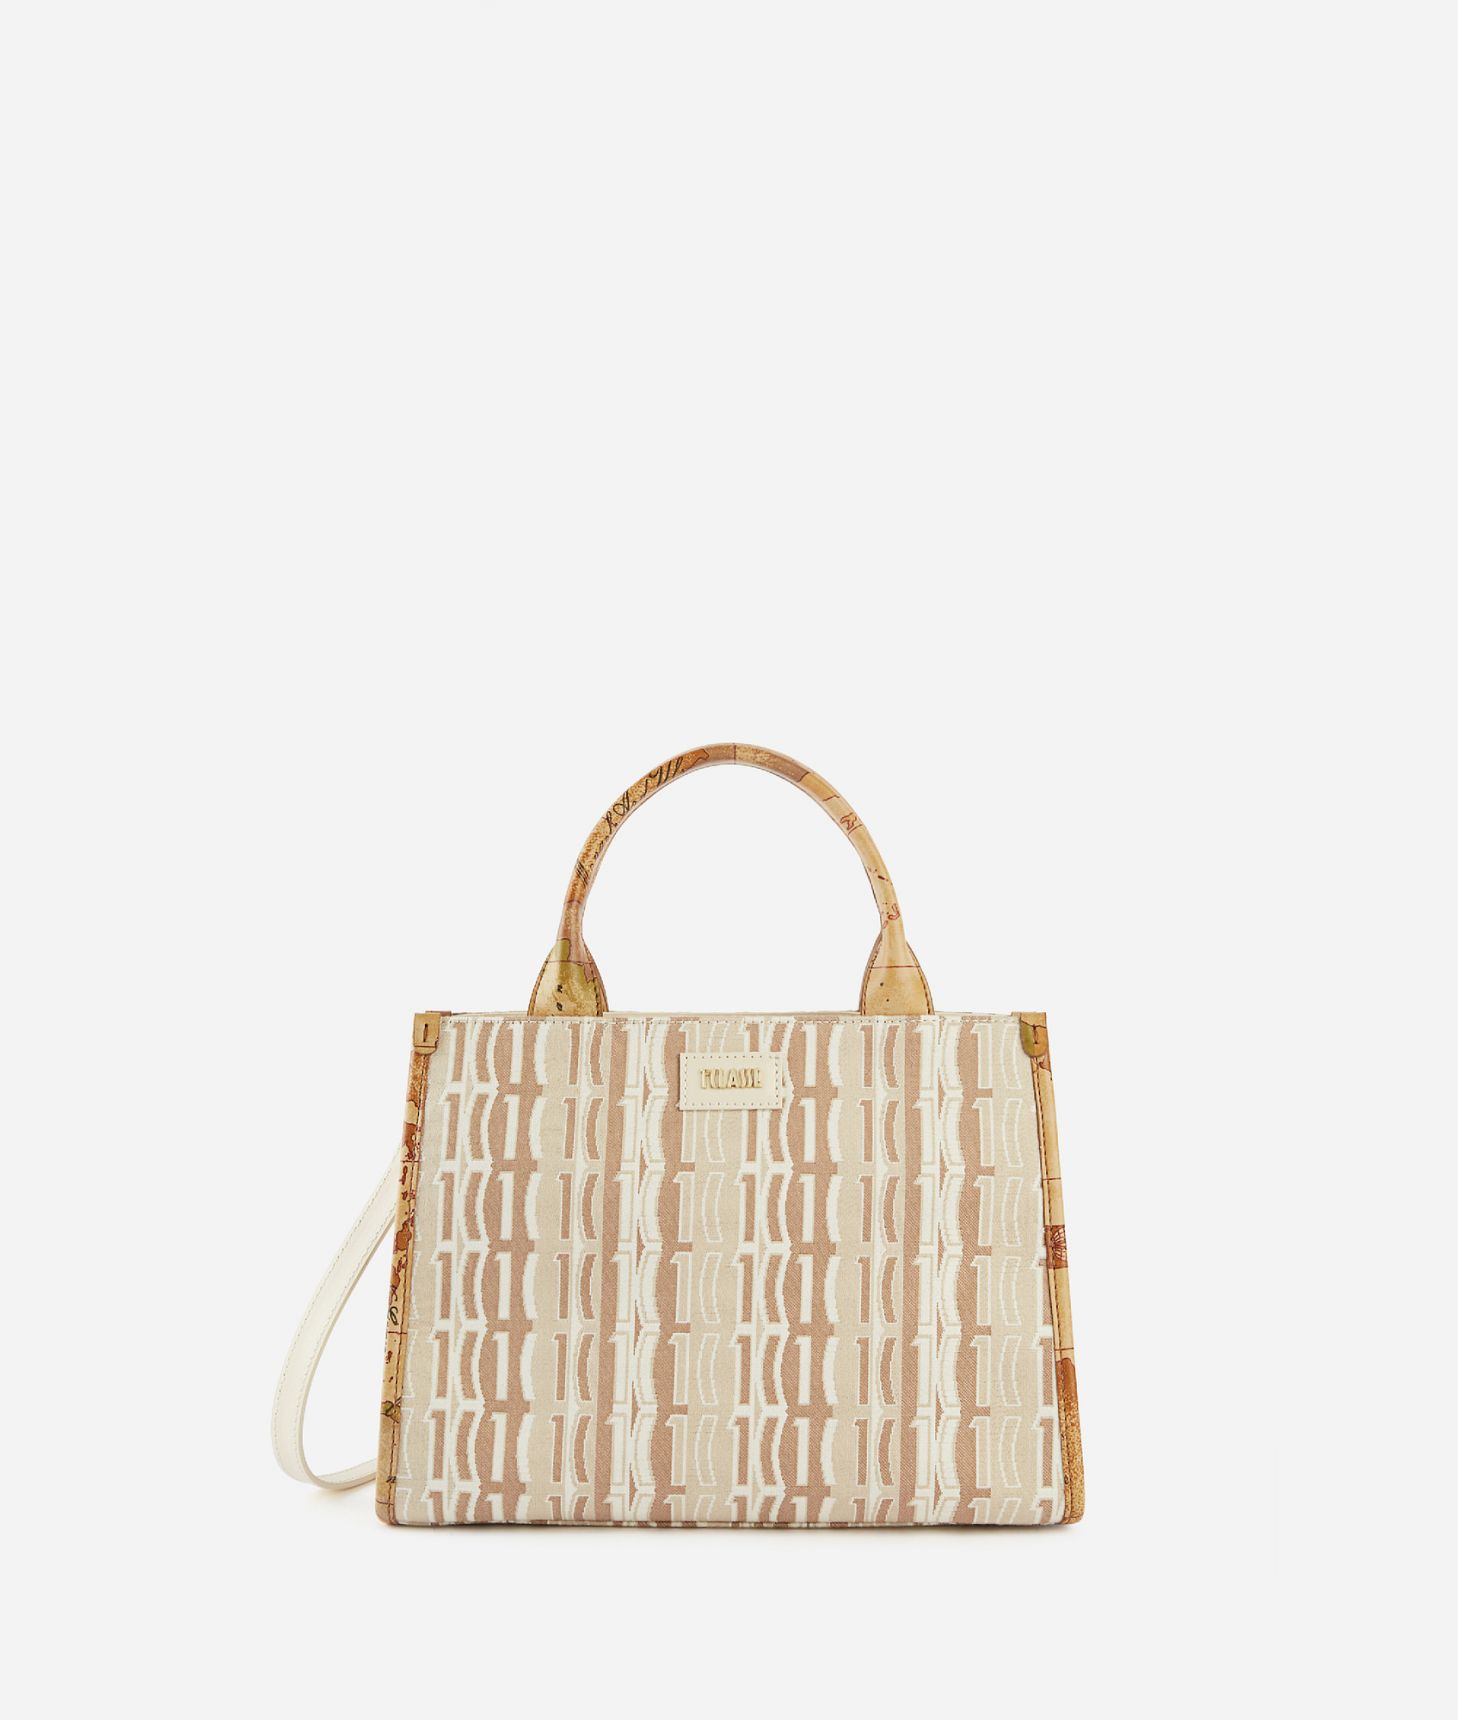 Jacquard Sand small handbag with crossbody strap Natural,front